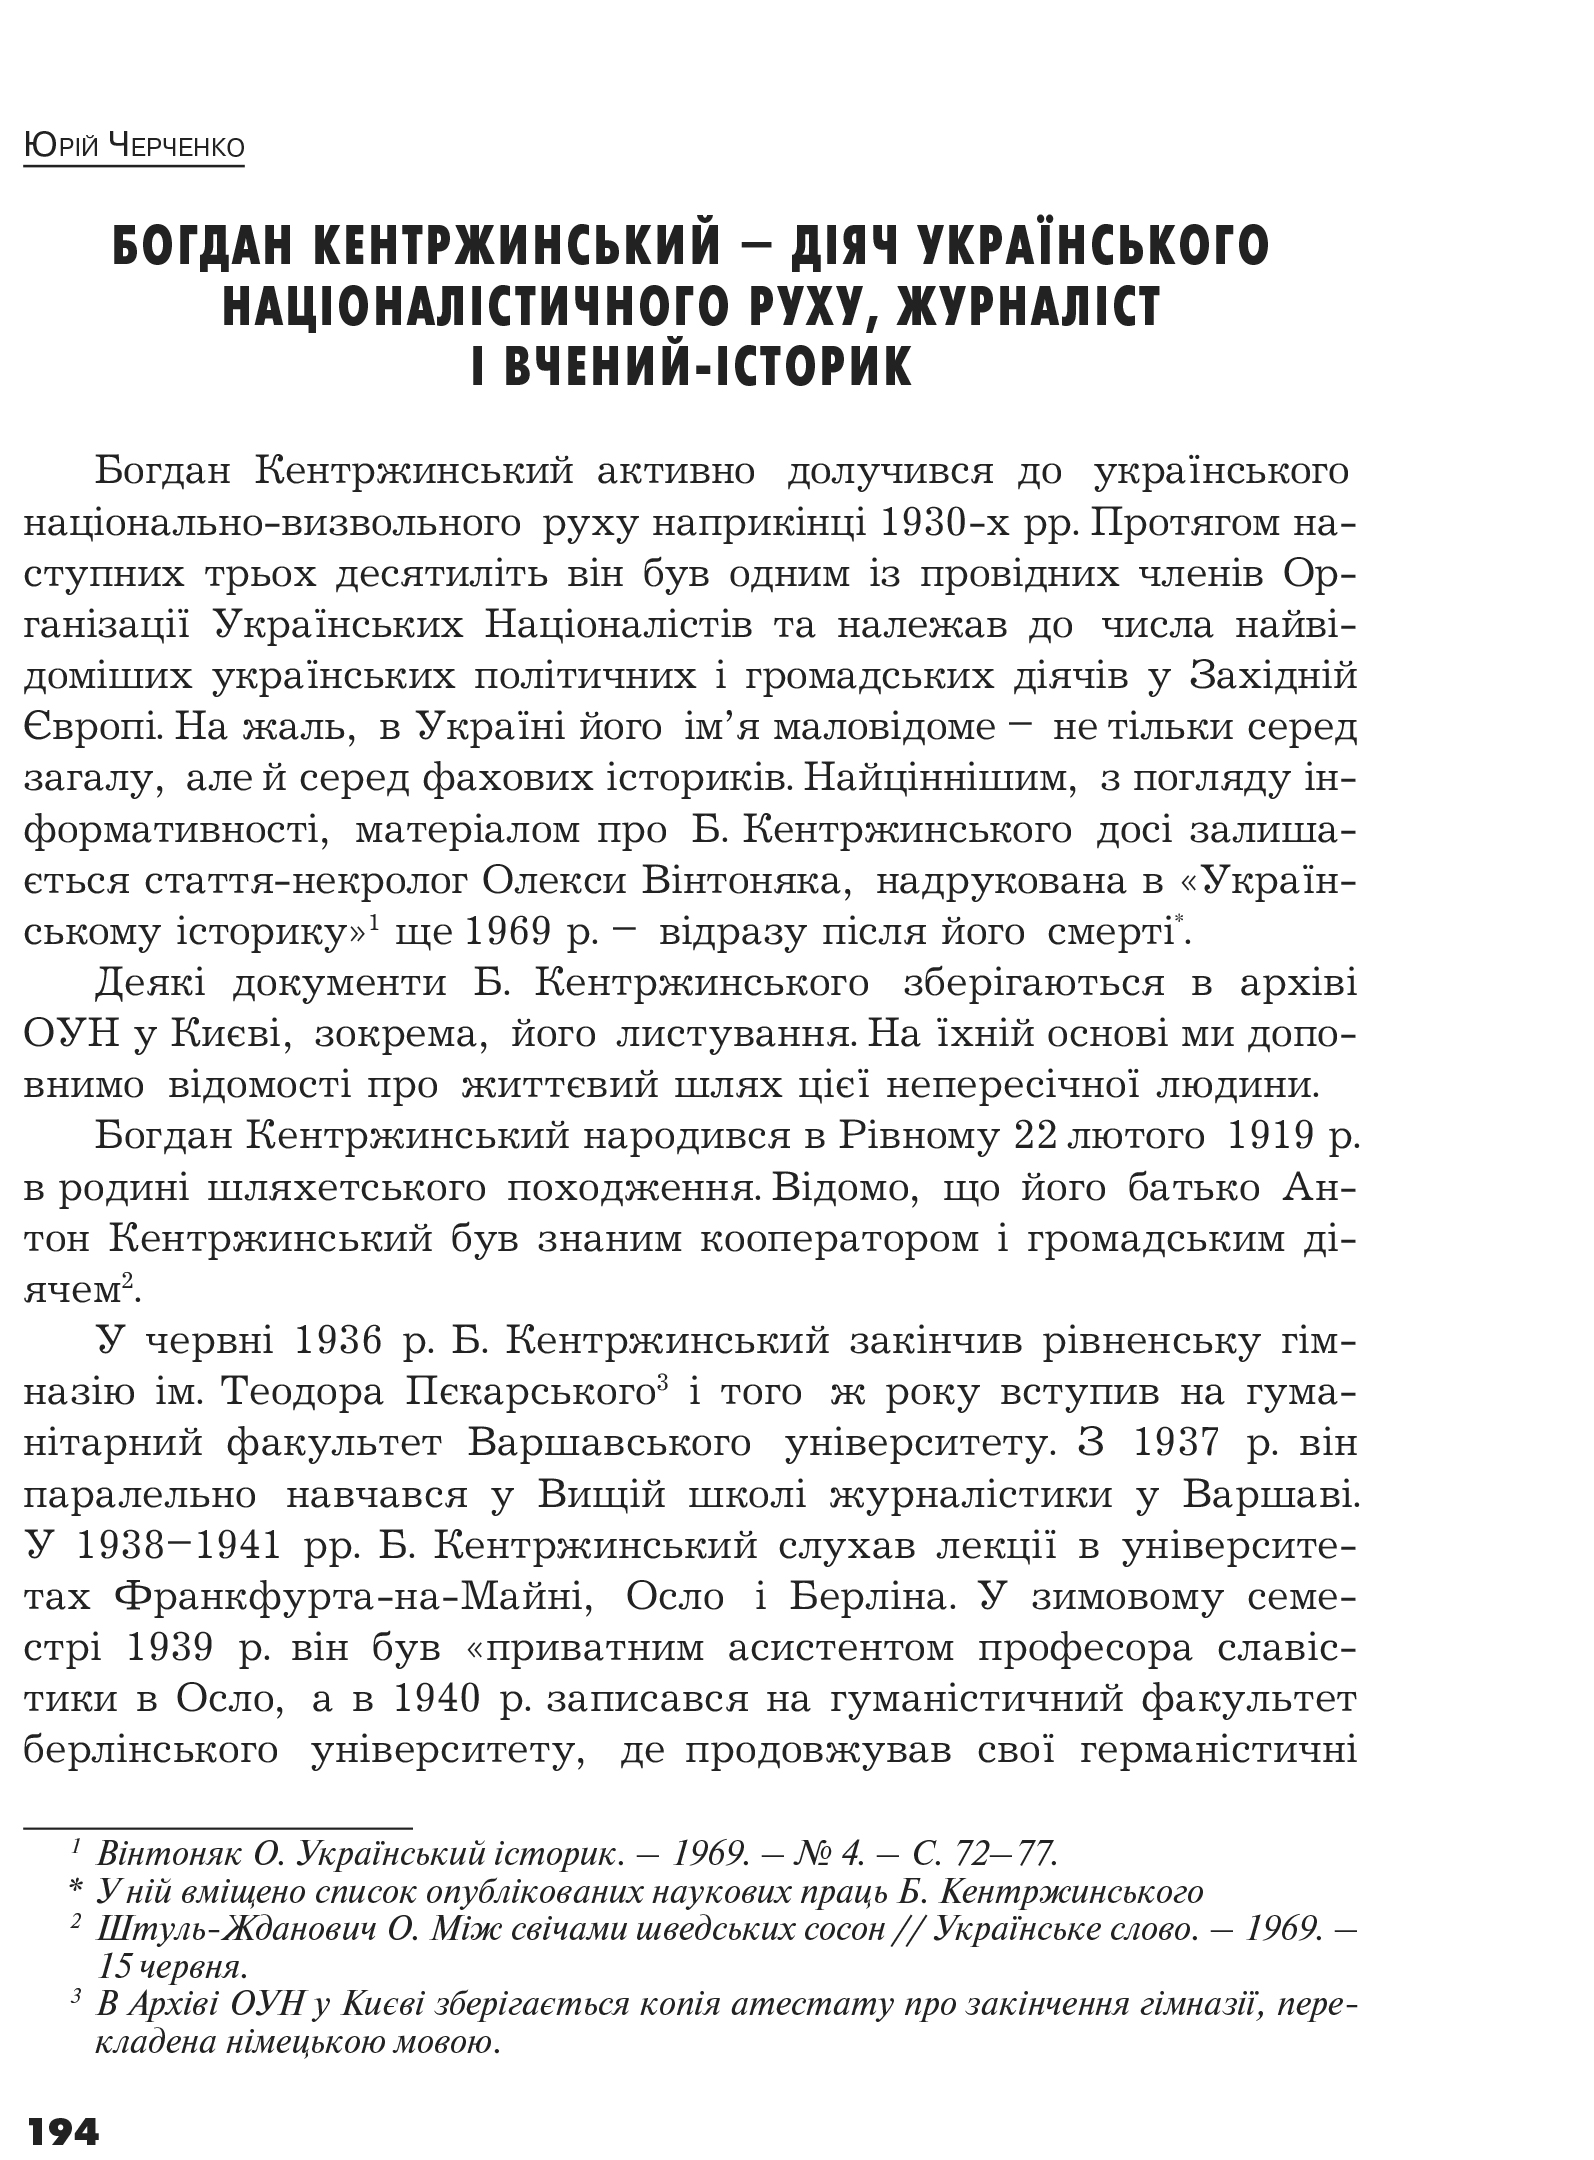 Український визвольний рух №14, ст. 194 - 204